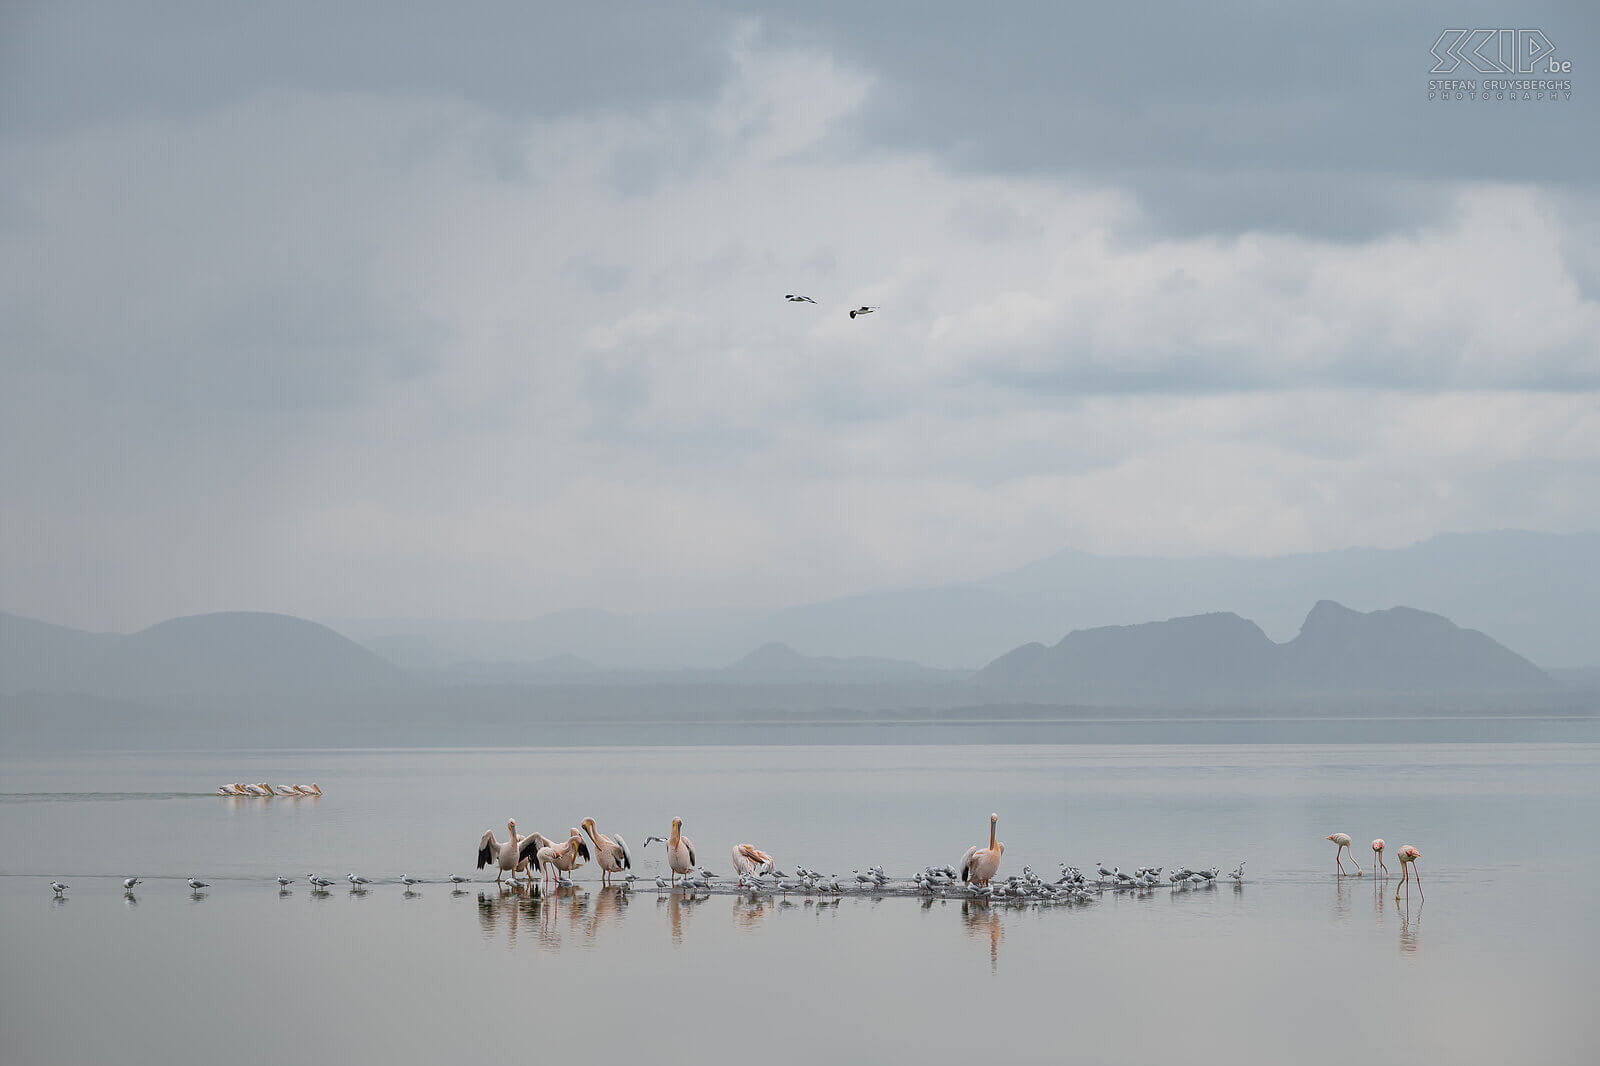 Lake Elementaita - Roze pelikanen en flamingo's Het ondiepe sodameer van Lake Elementaita wordt gezien als één van de mooiste meren van Kenia en het is 18m2 groot. Het regende toen wij in Soysambu toekwamen en dit zorgde voor wondermooi licht en een hele zachte achtergrond. Genieten dus voor een natuurfotograaf. We zagen er veel flamingo's en kleine groepjes roze pelikanen. Stefan Cruysberghs